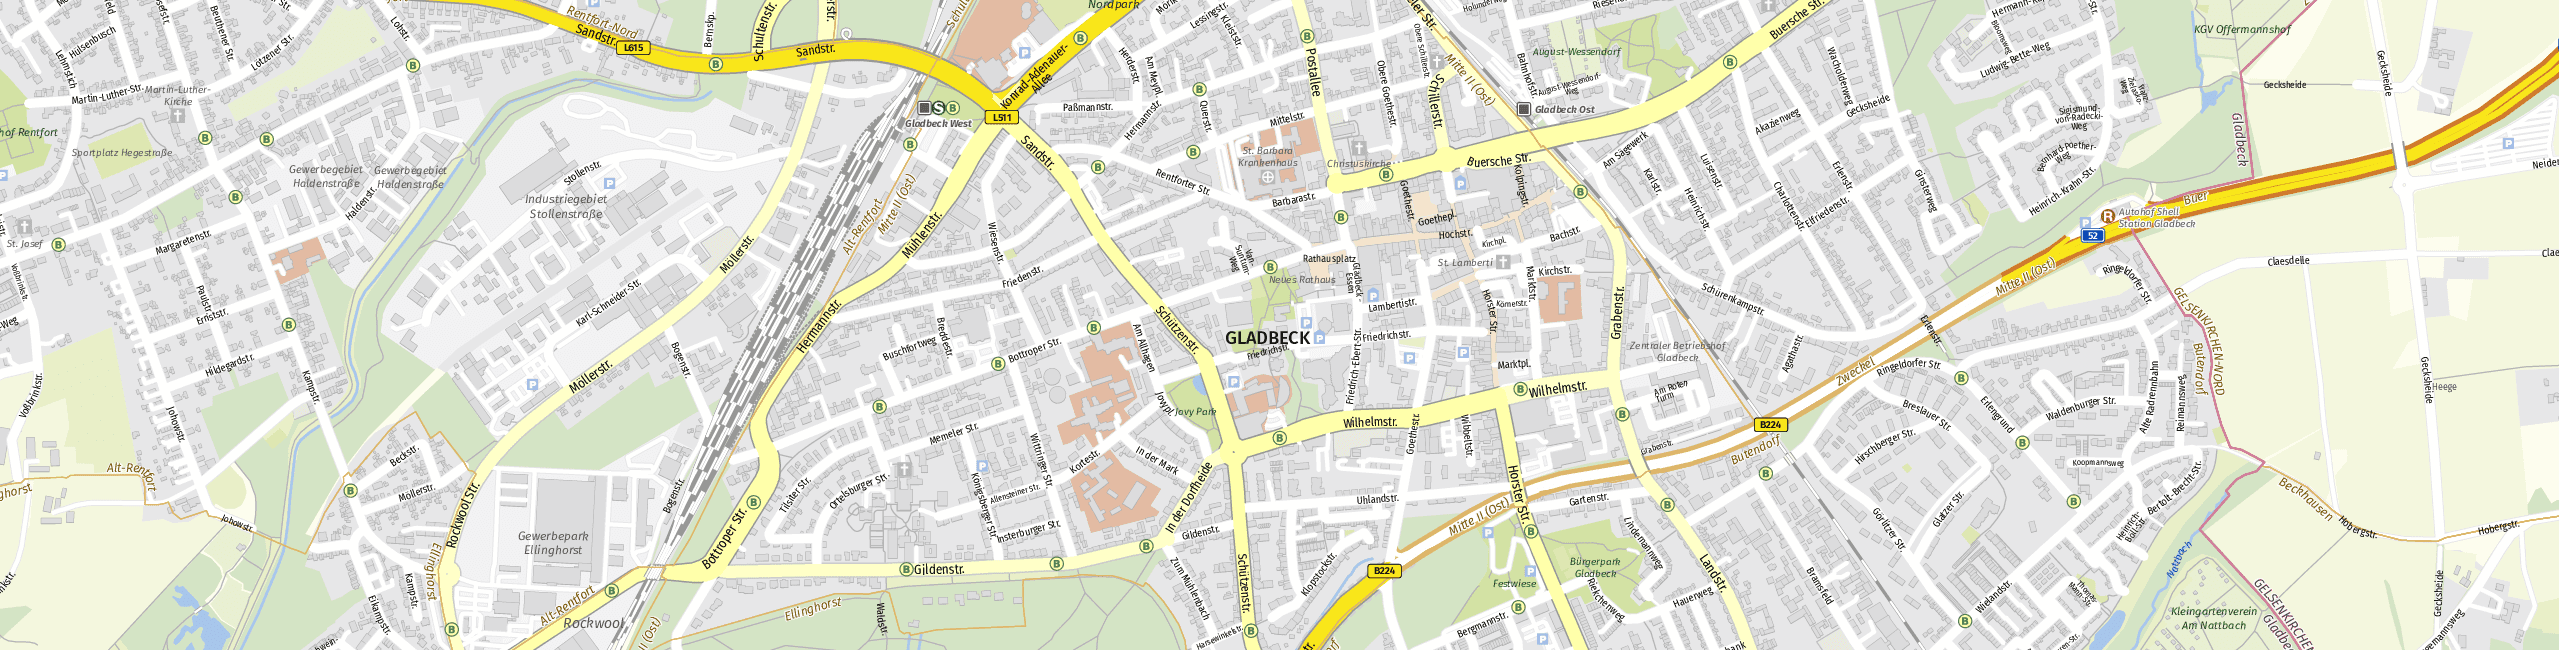 Stadtplan Gladbeck zum Downloaden.